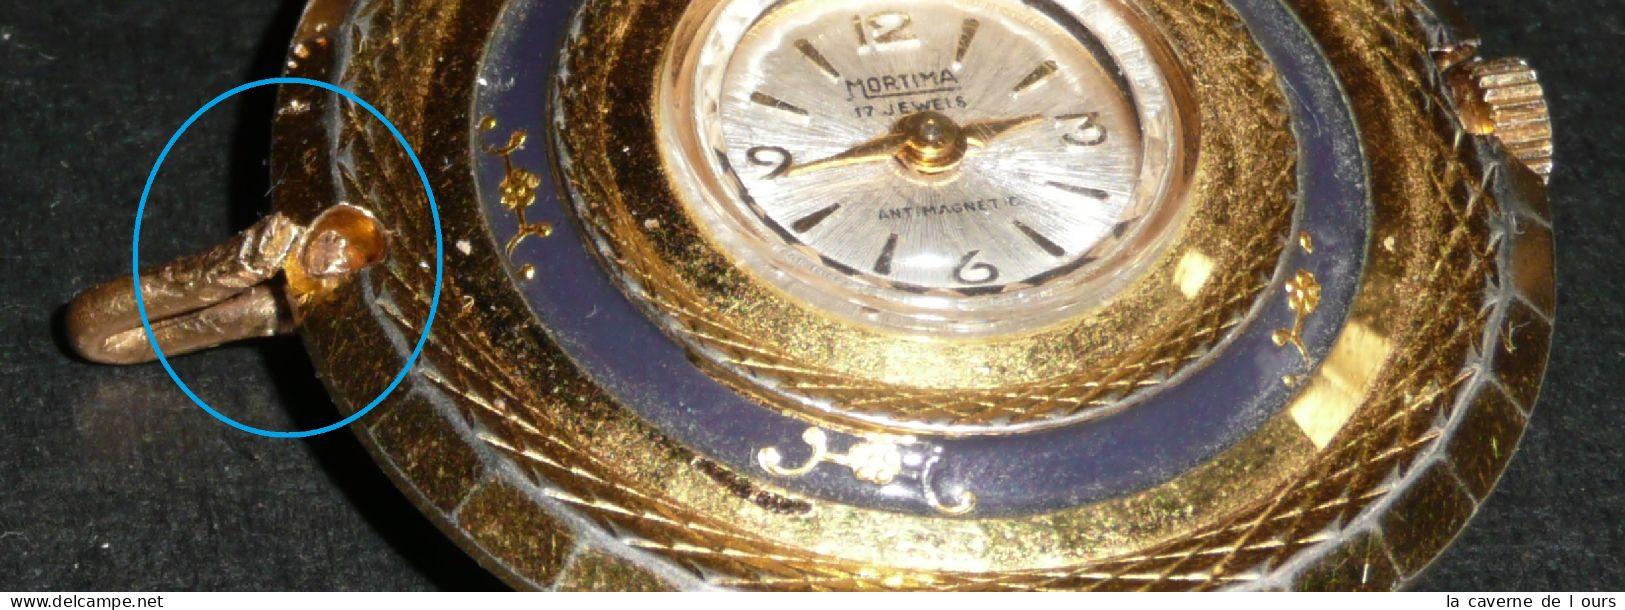 Rare Ancien Pendentif-montre Mécanique, MORTIMA 17 Jewels, Décor Fleurs, Gousset - Montres Gousset